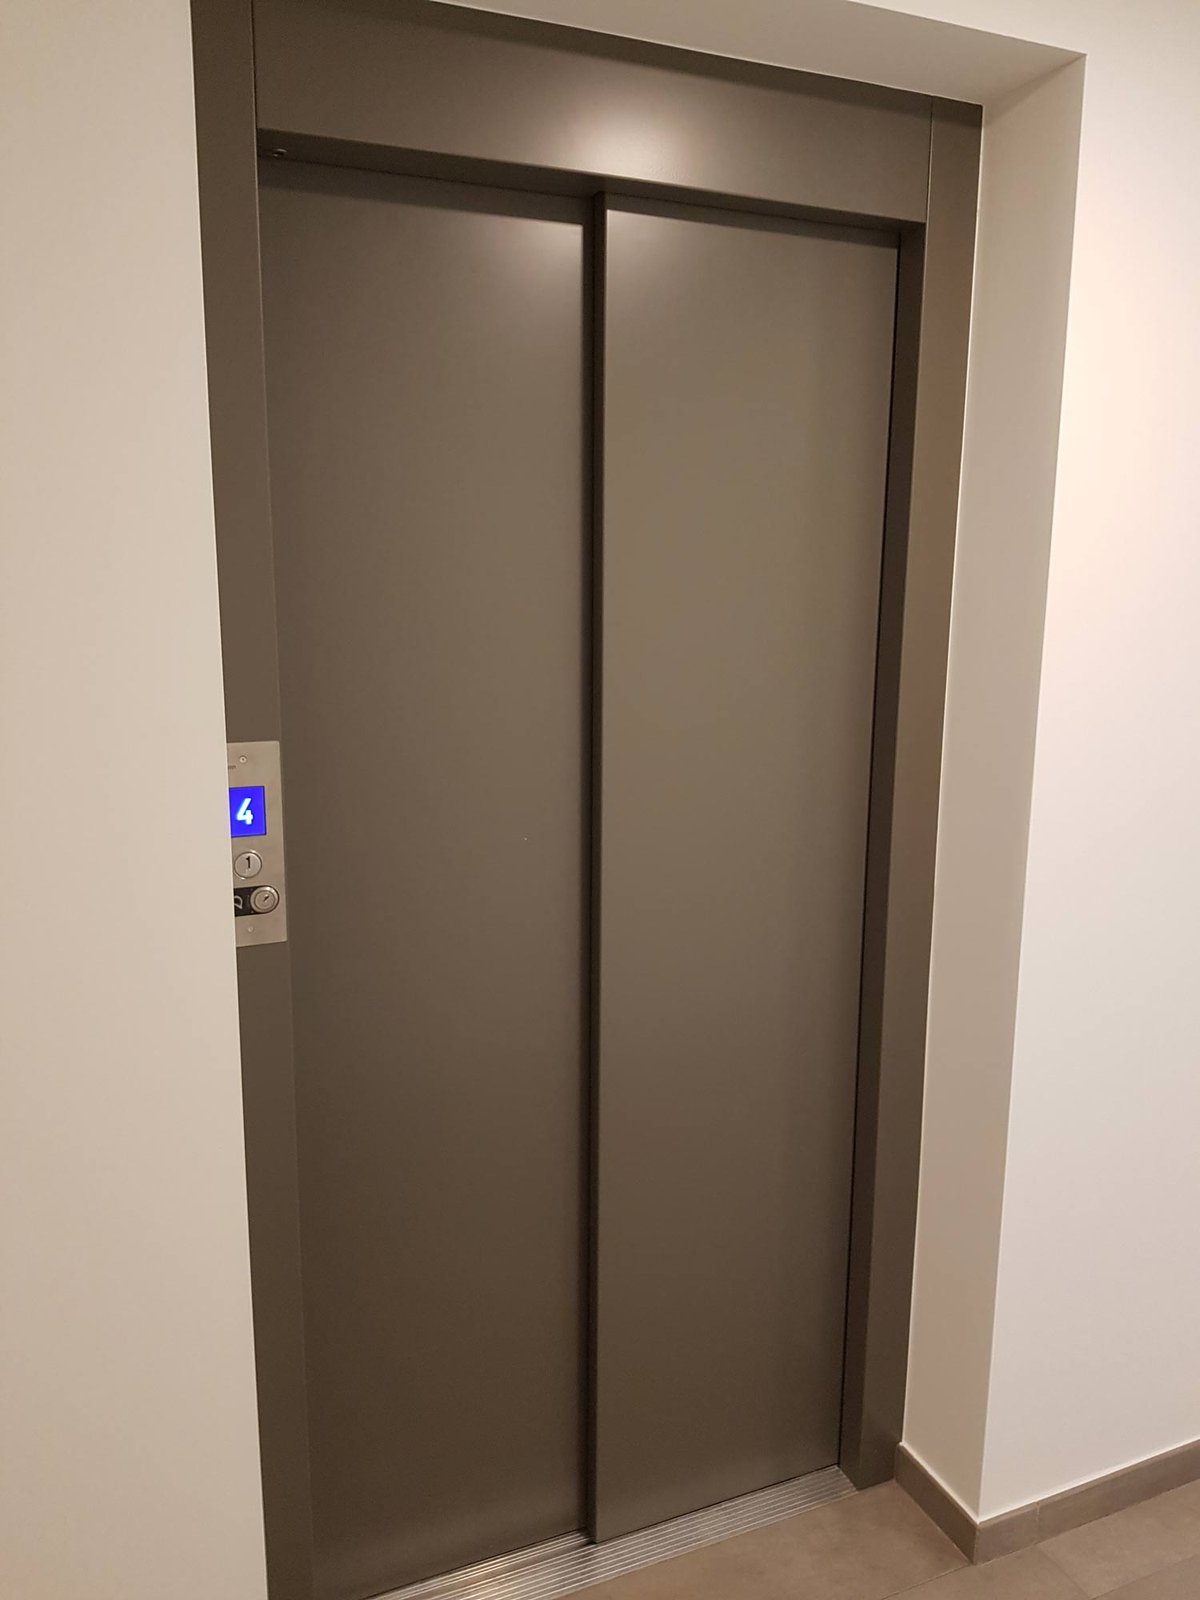 nuovo ascensore ad azionamento elettrico